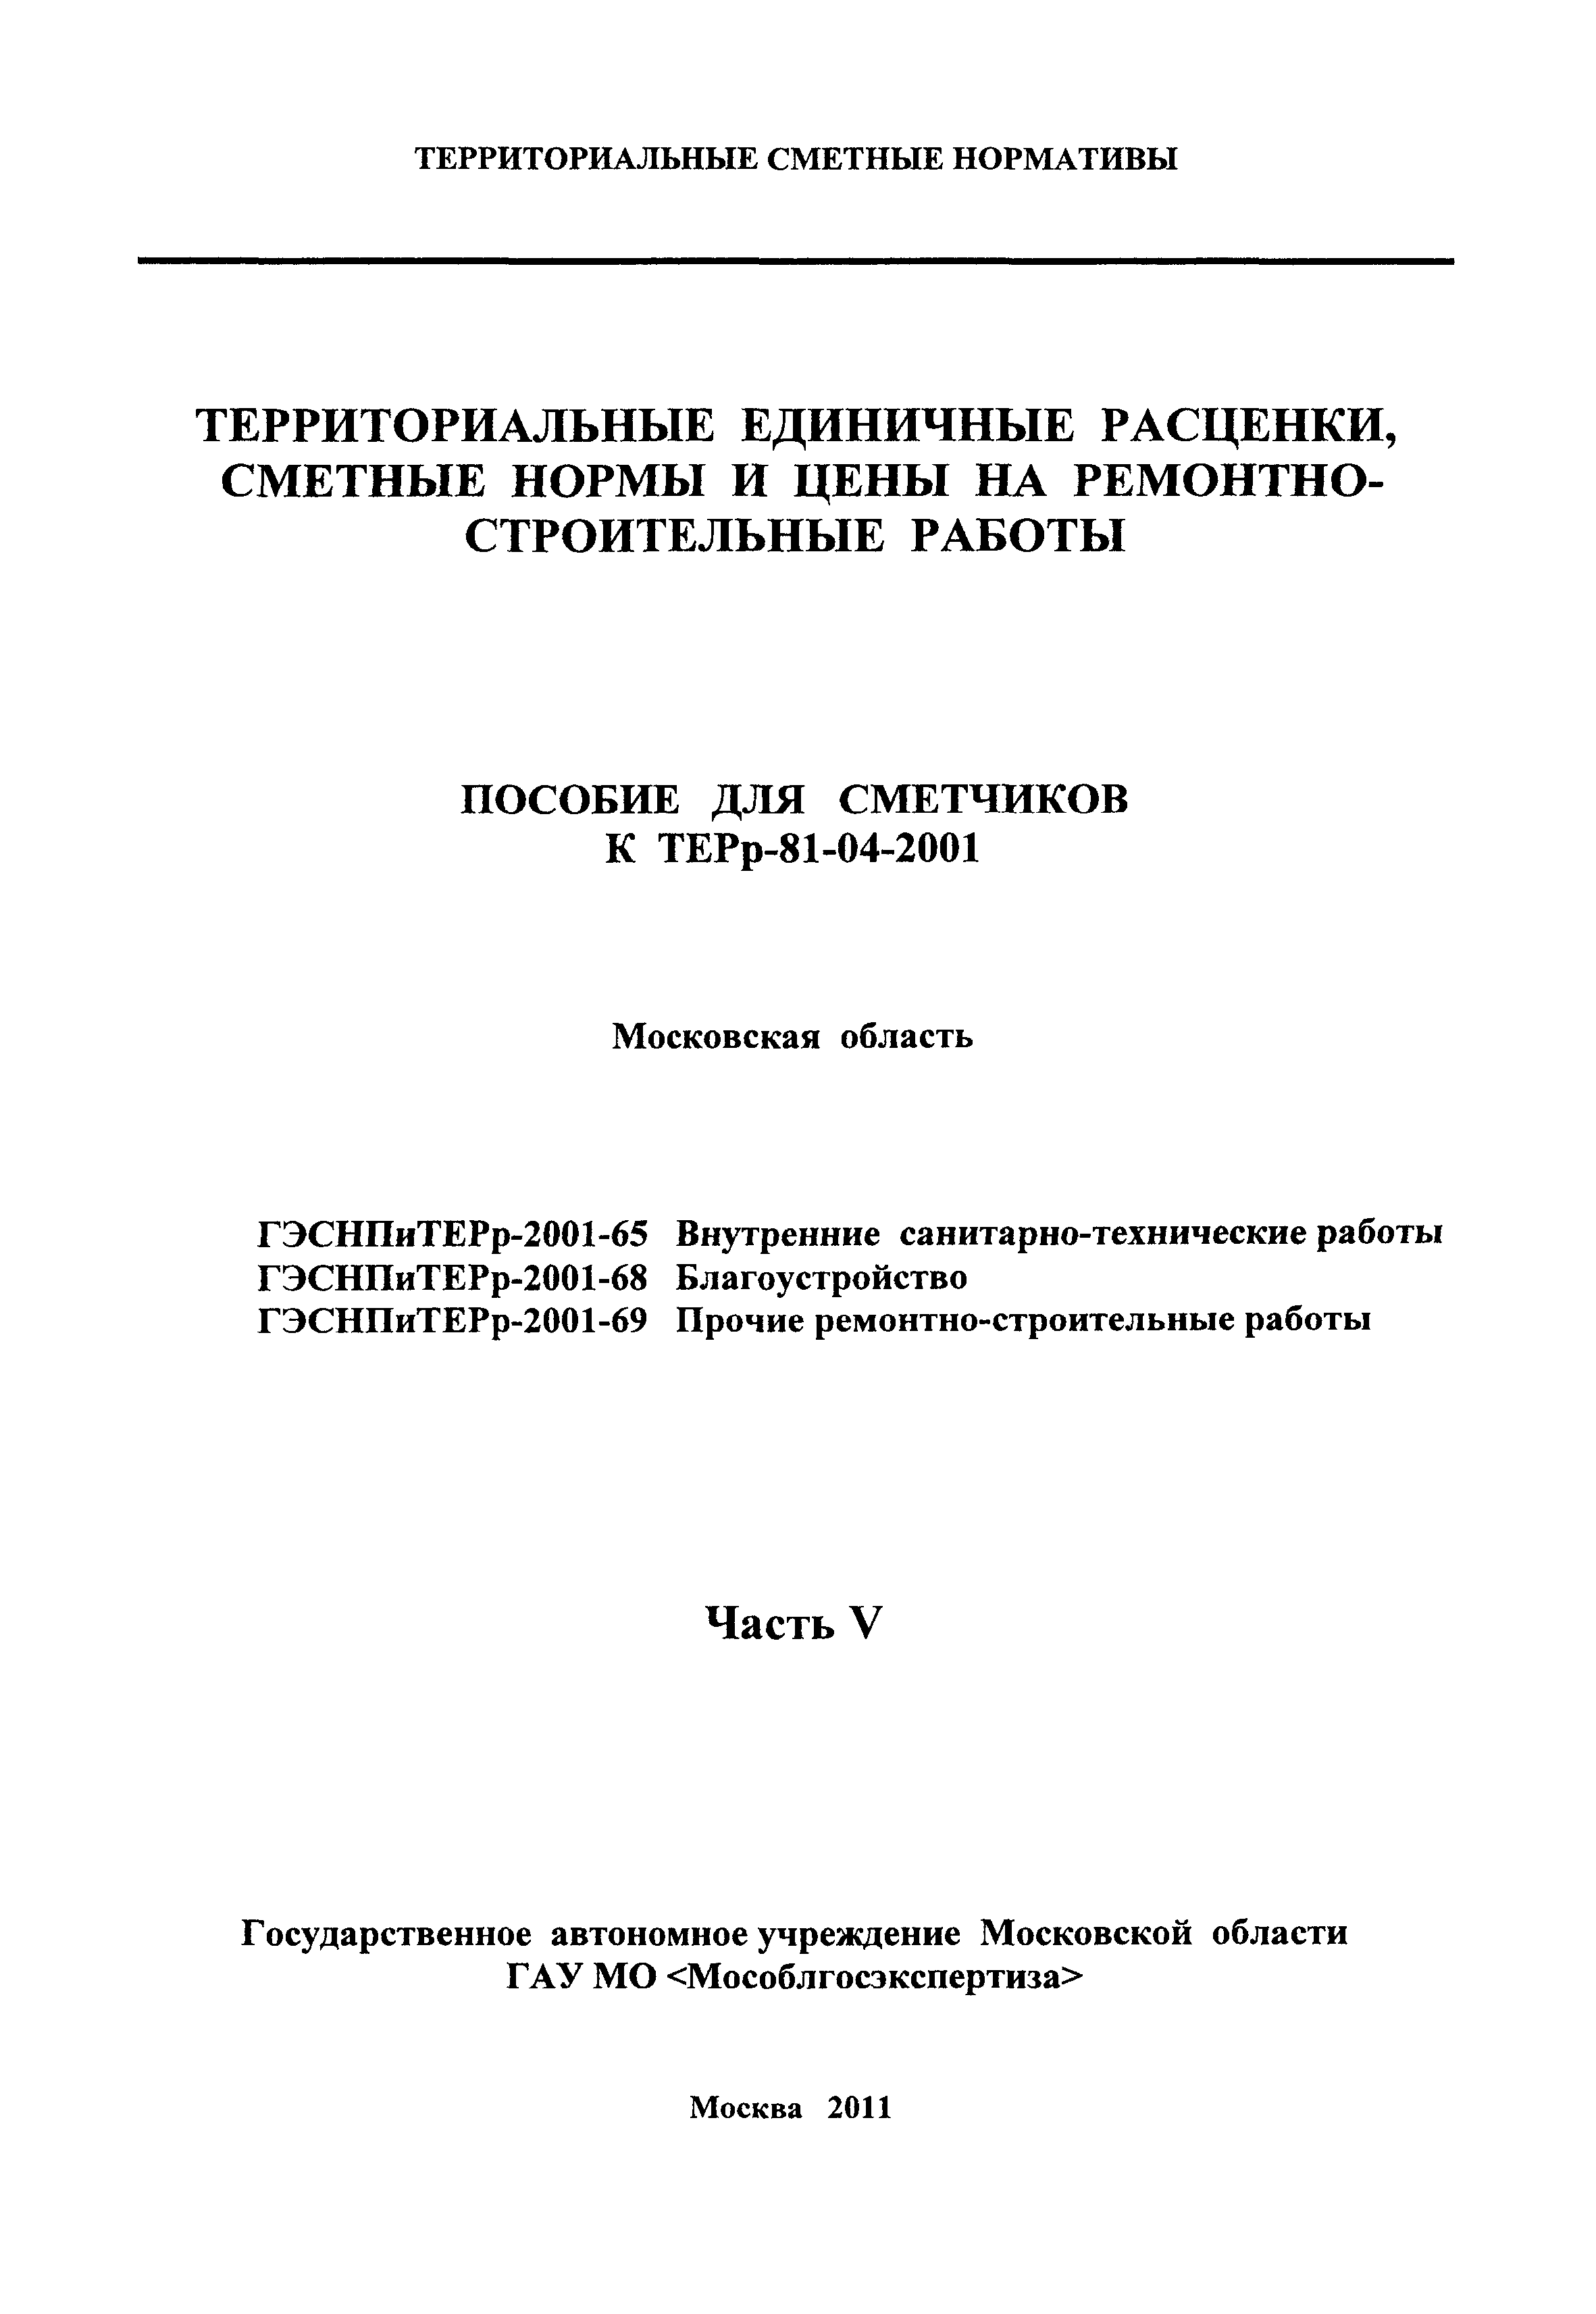 ГЭСНПиТЕРр 2001-69 Московской области